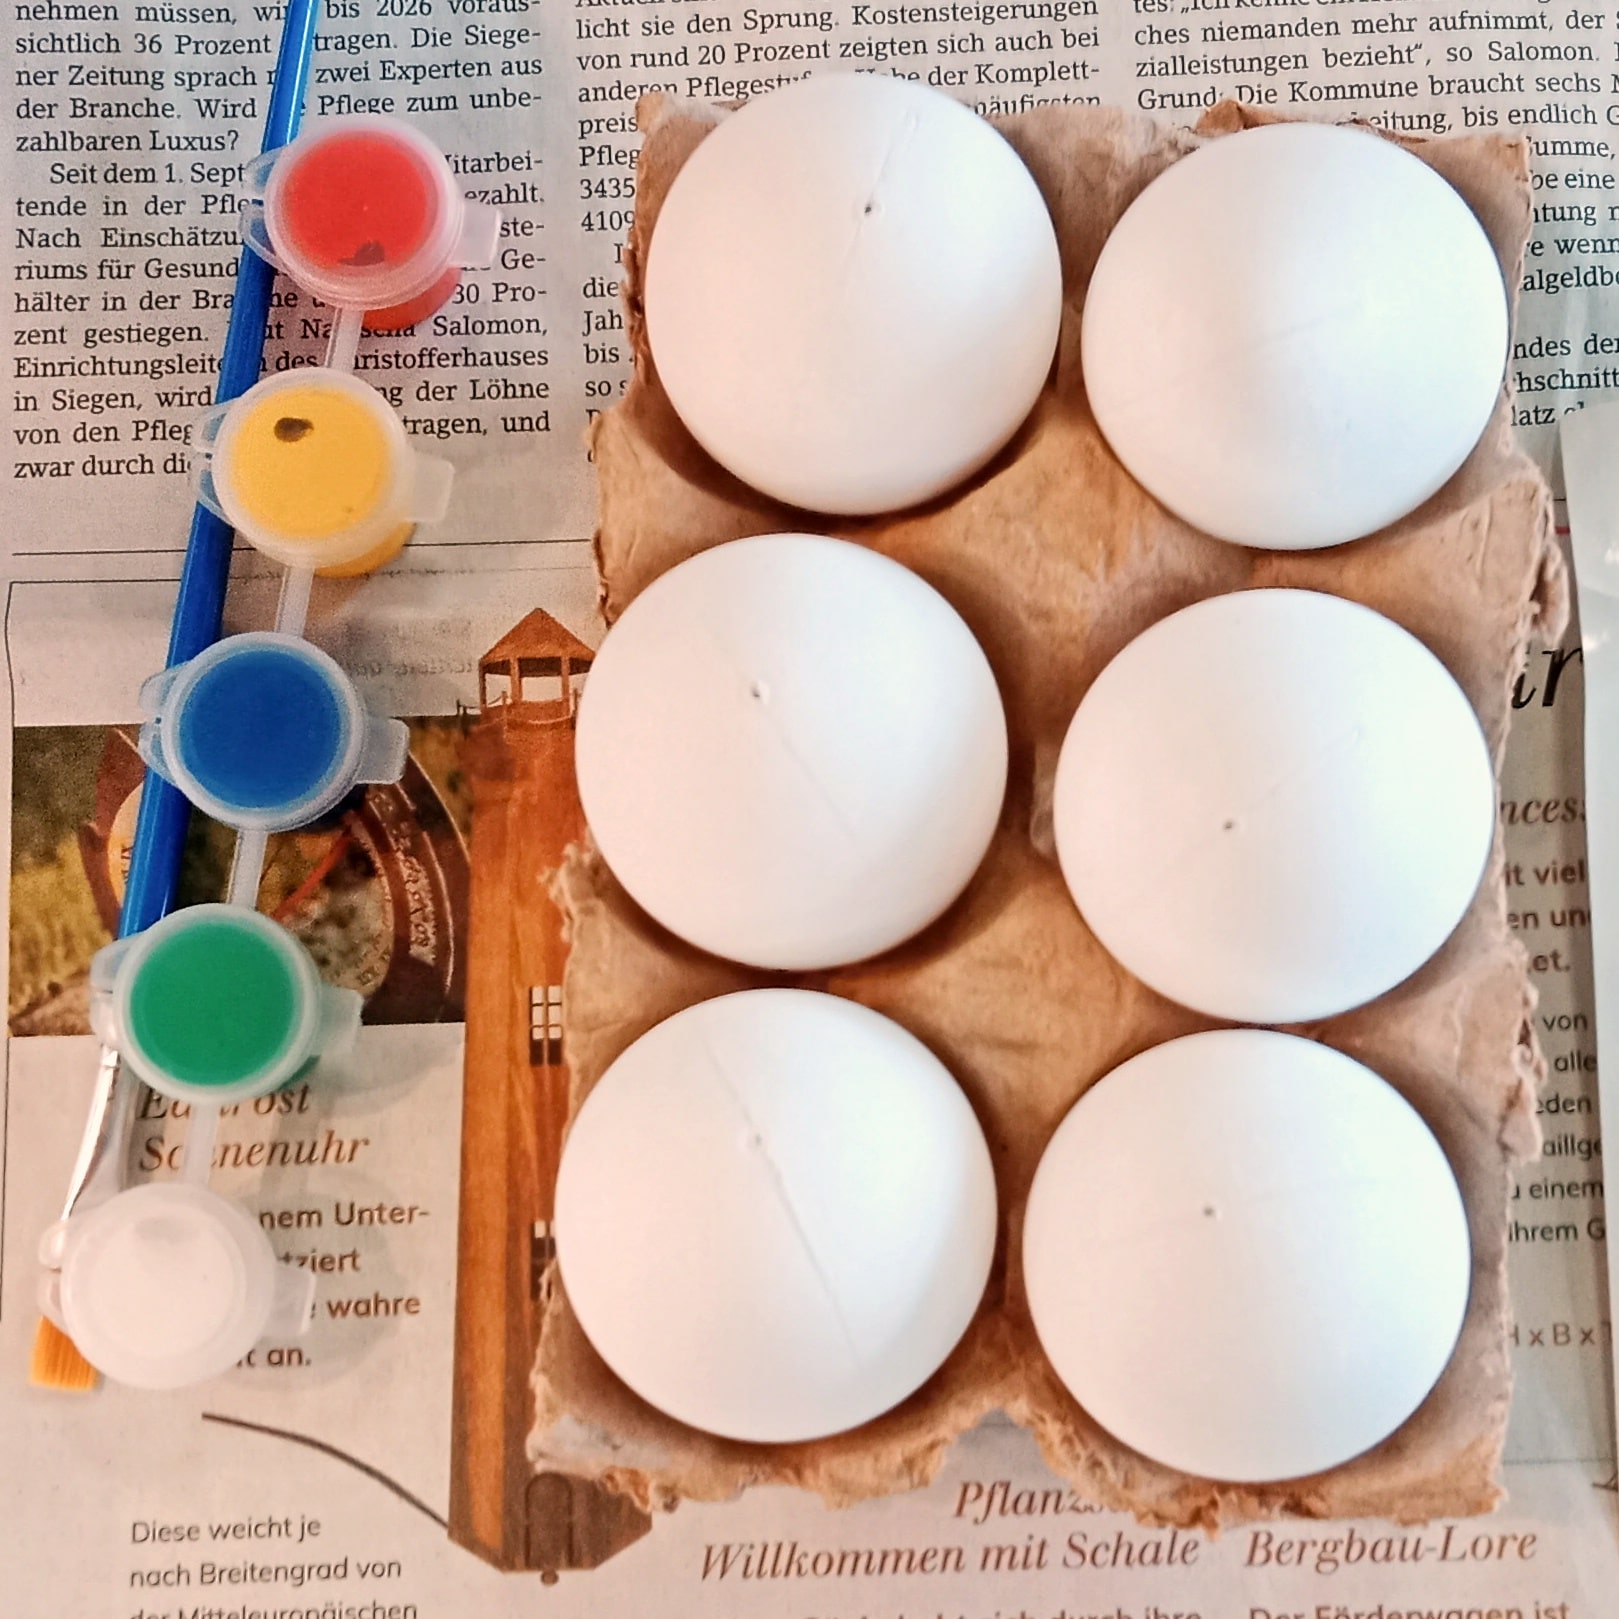 Ein Karton mit weißen Eiern und mehrere Behälter Acrylfarbe stehen bereit